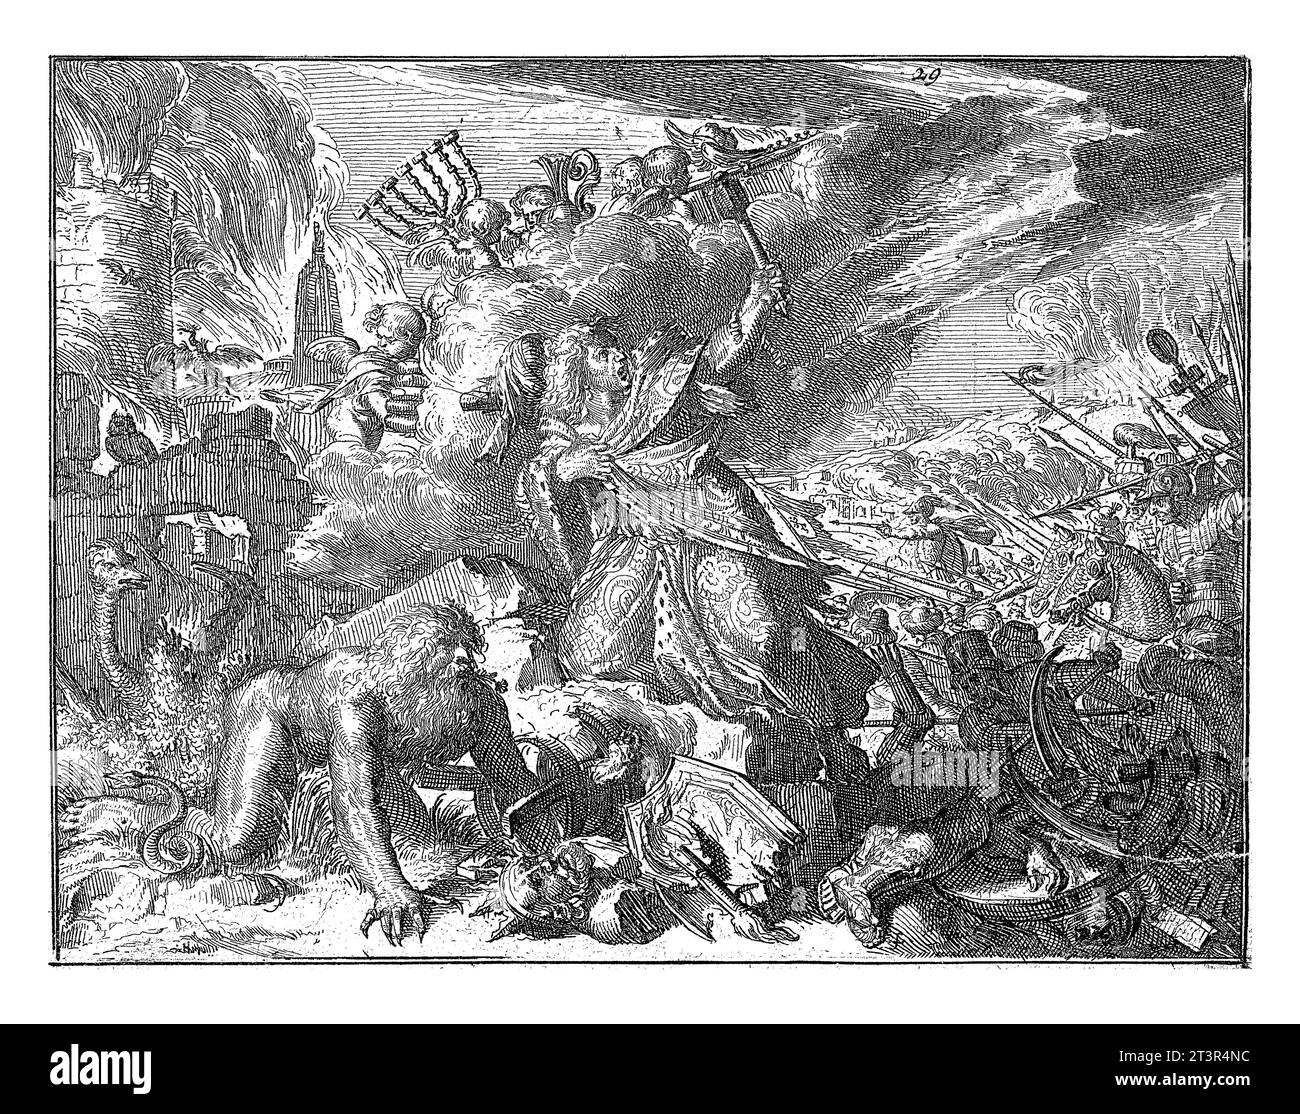 Mann in Mantel gewickelt wird von Reitern angegriffen, Romeyn de Hooghe, 1655 - 1708 Mann mit Mantel und Turban wird von Reitern angegriffen. In der Luft Putti mit c Stockfoto